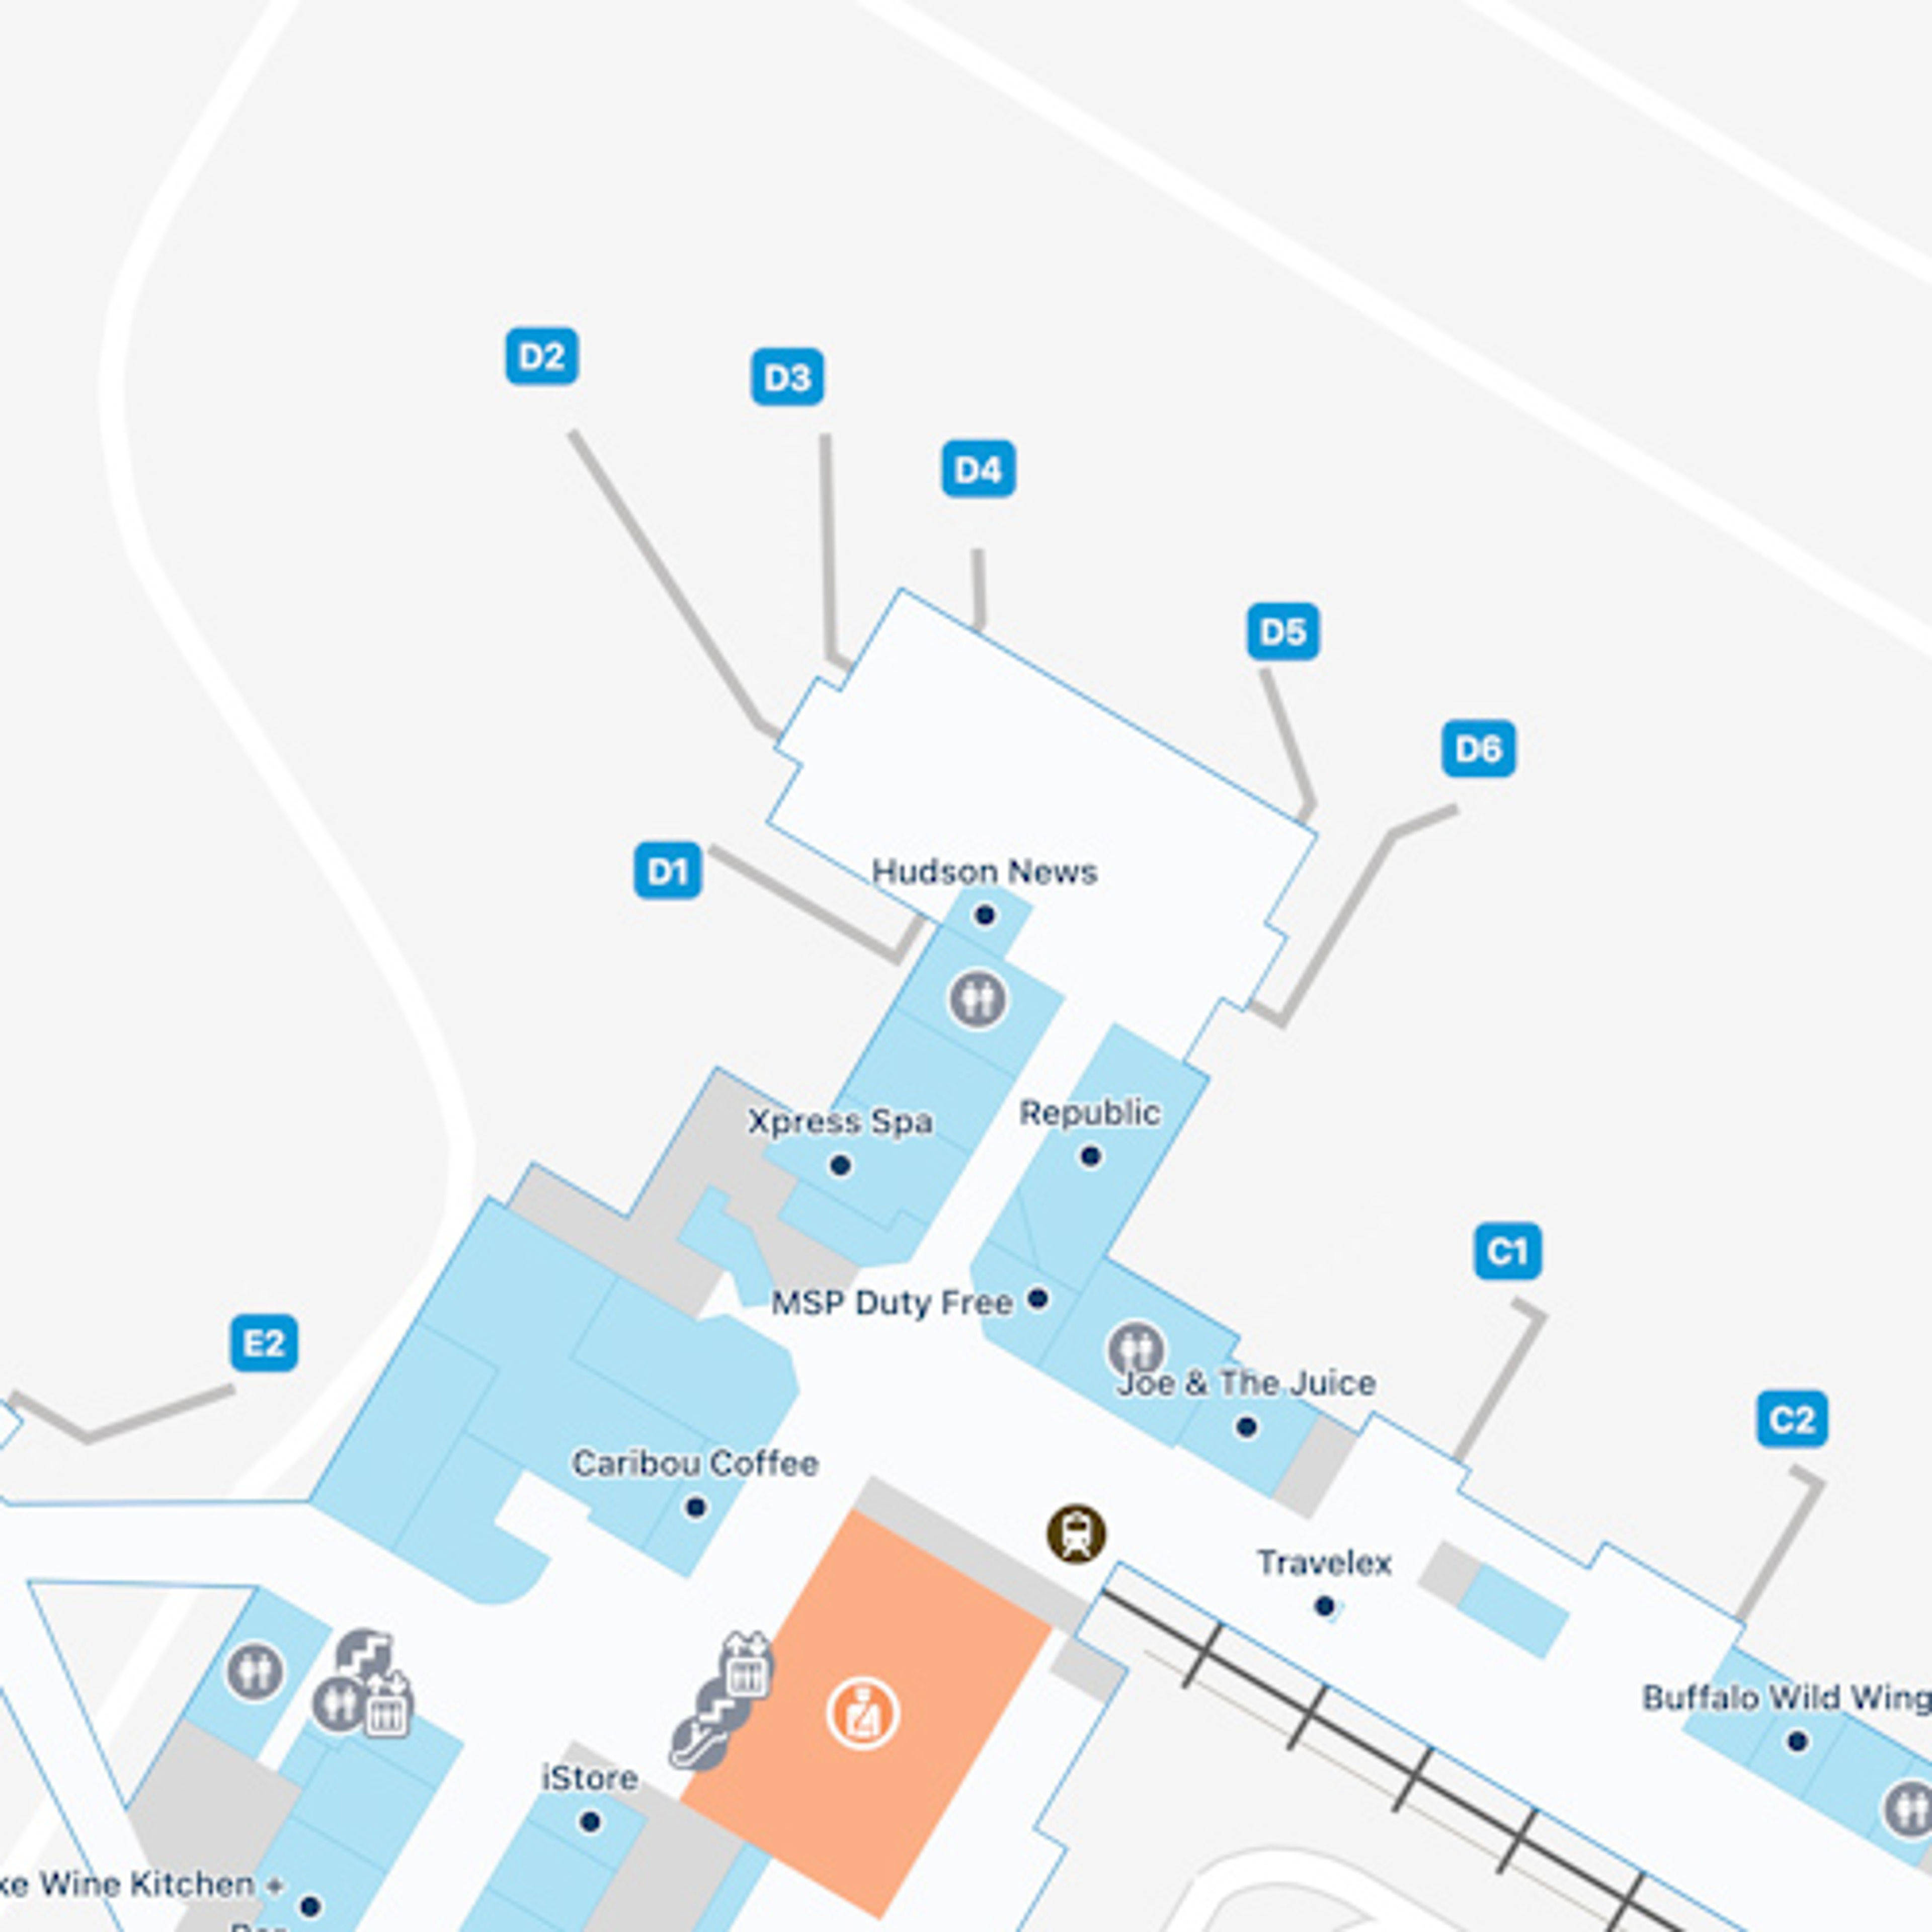 St. Paul Airport Concourse D Map